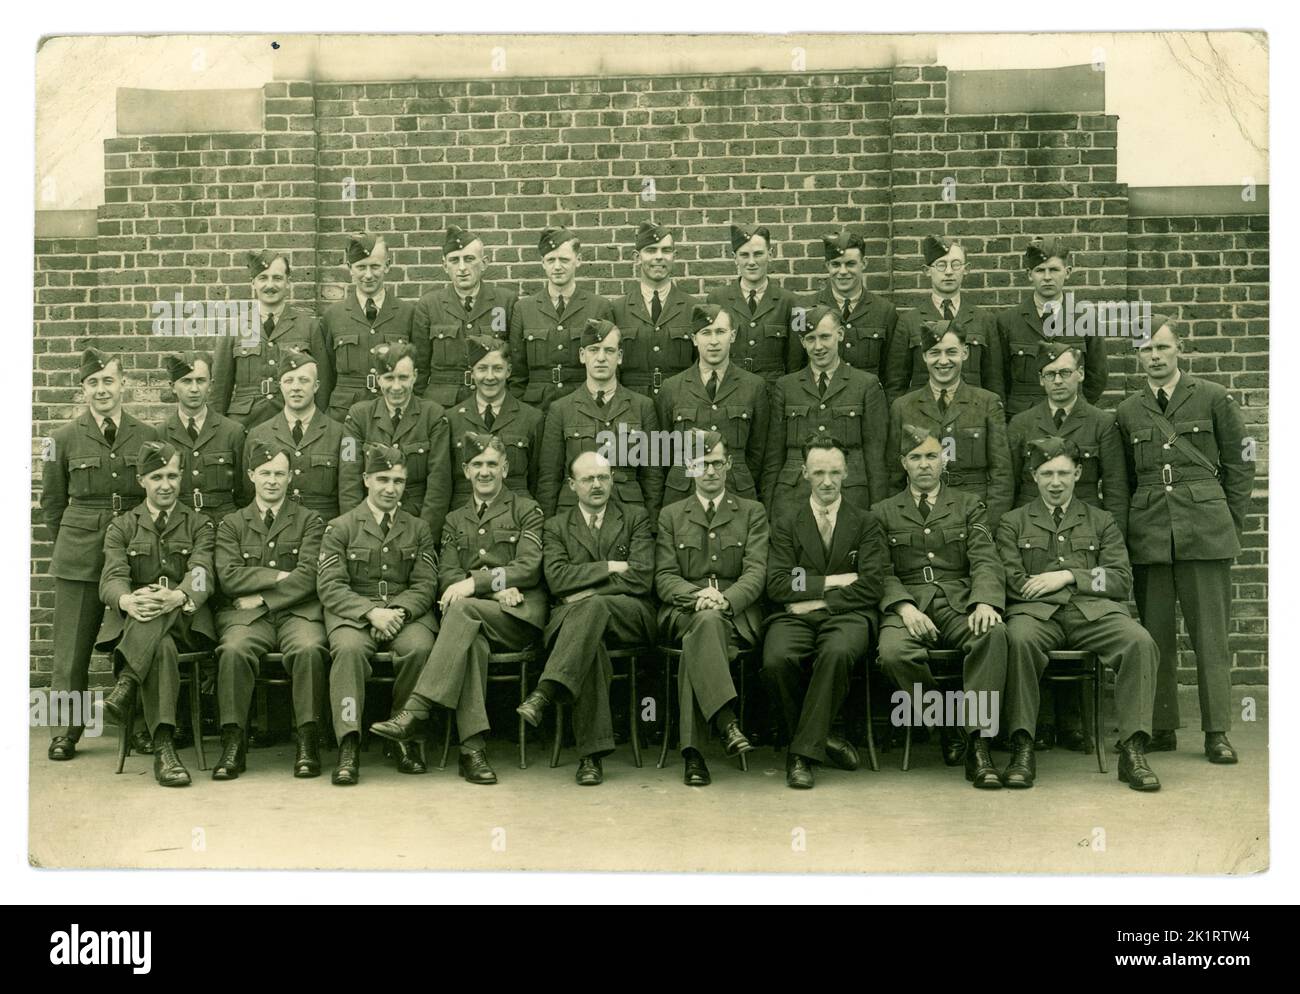 Aviadores originales de la era WW2 del personal real de la fuerza aérea (RAF) que llevaban uniforme de túnica y tapas laterales. En la escuela de entrenamiento aéreo. Hay examinadores o personal no militar, bolígrafos en bolsillos sentados con ellos. Alrededor de 1943, lugar desconocido, Reino Unido Foto de stock